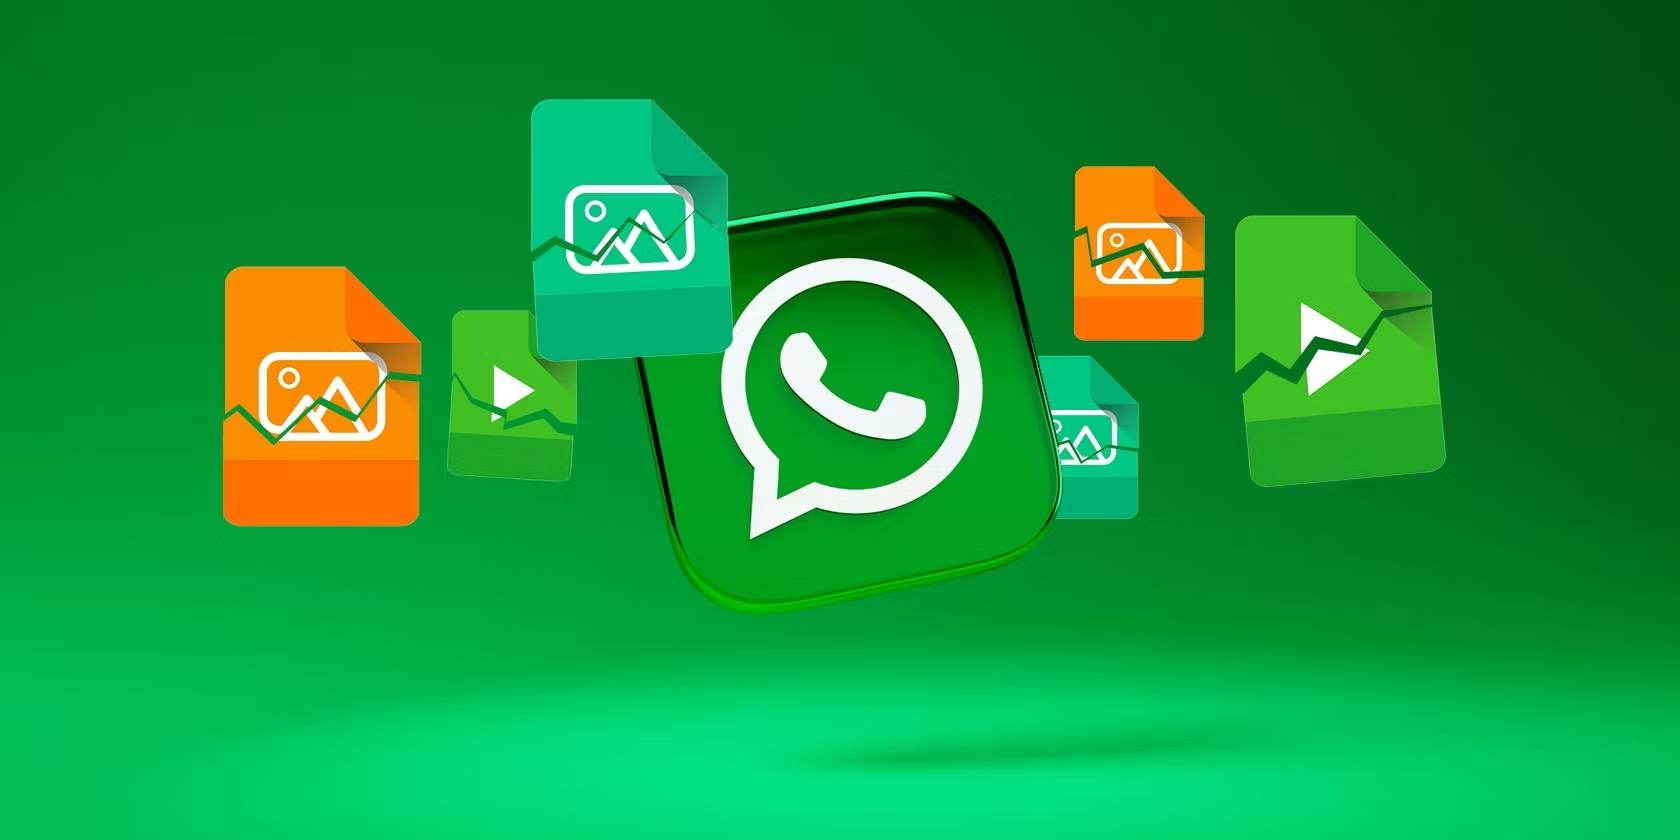 Come condividere contenuti effimeri su WhatsApp